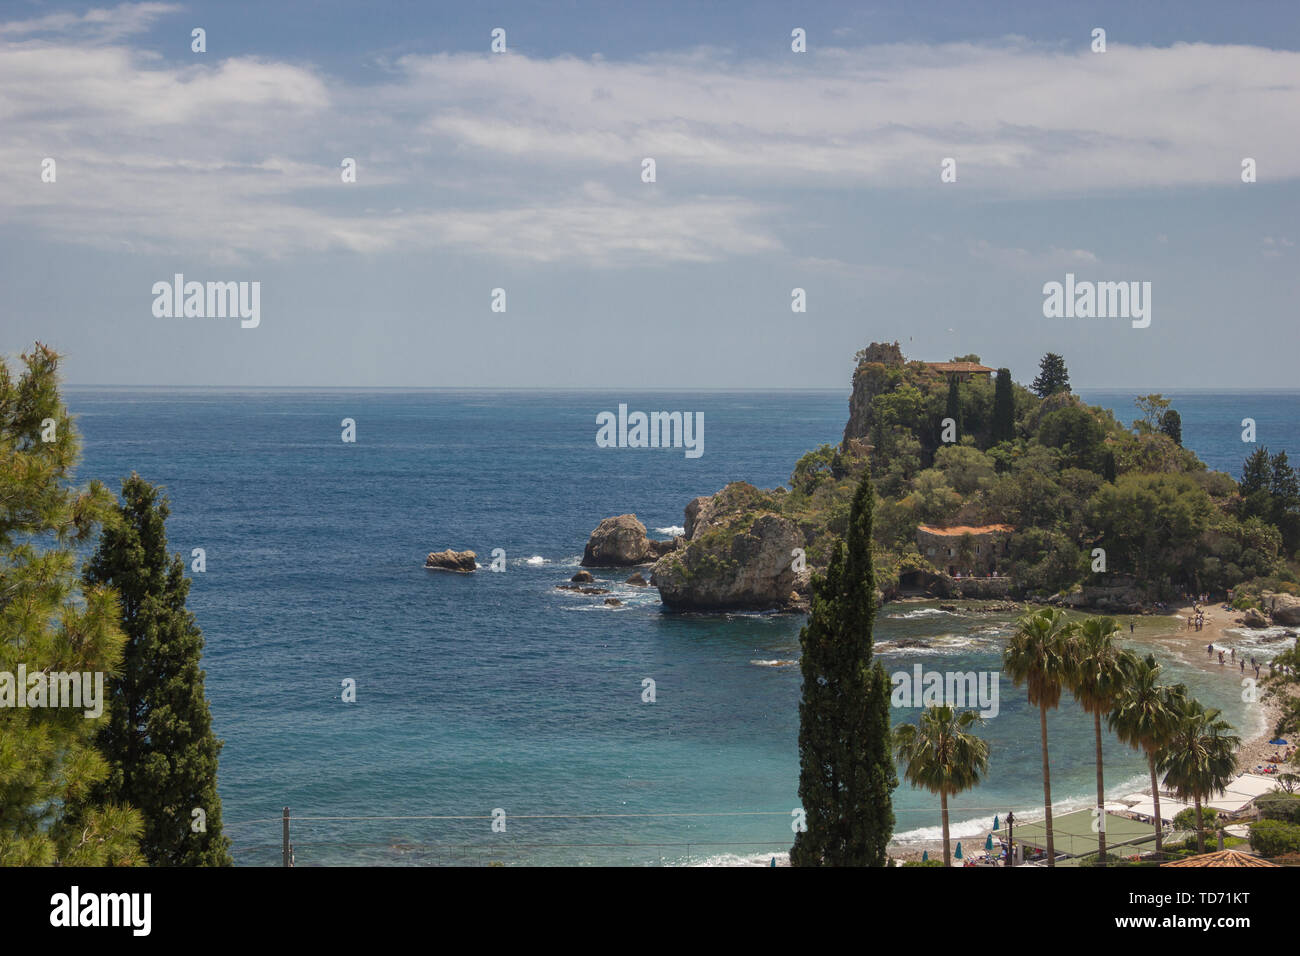 Taormina Sicilia bella spiaggia turistica a Isola Bella, panorama con il blu del mare e il verde della natura Foto Stock